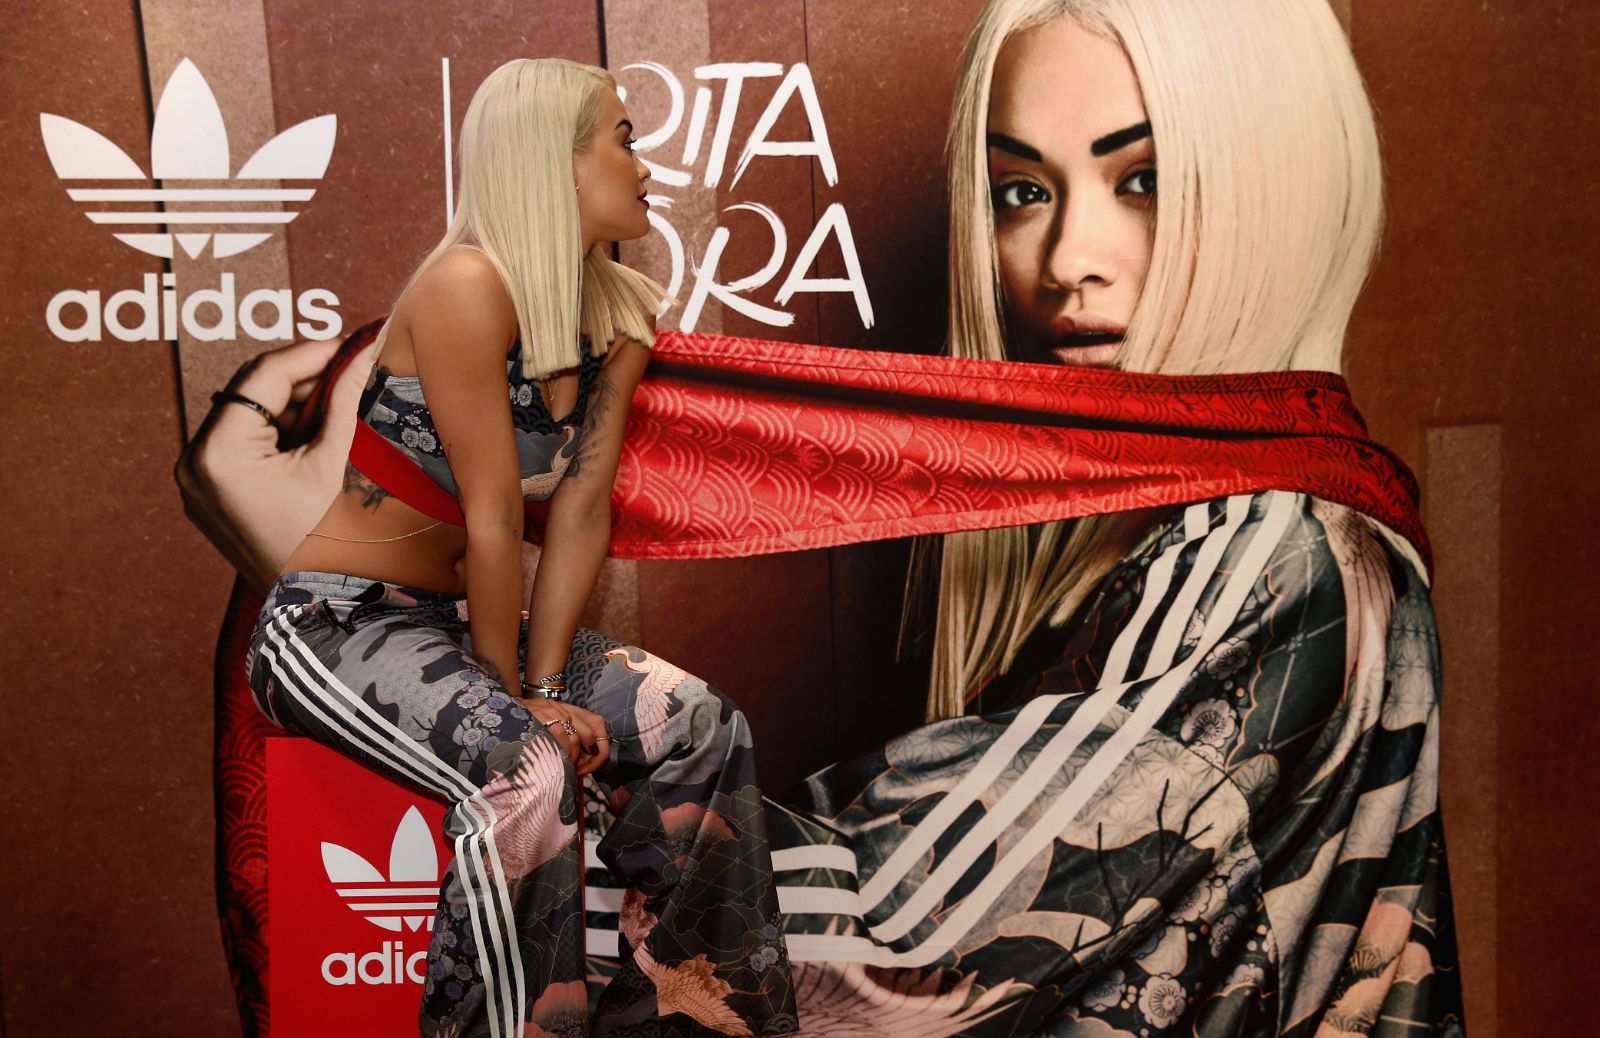 Adidas e Rita Ora insieme per la nuova collezione